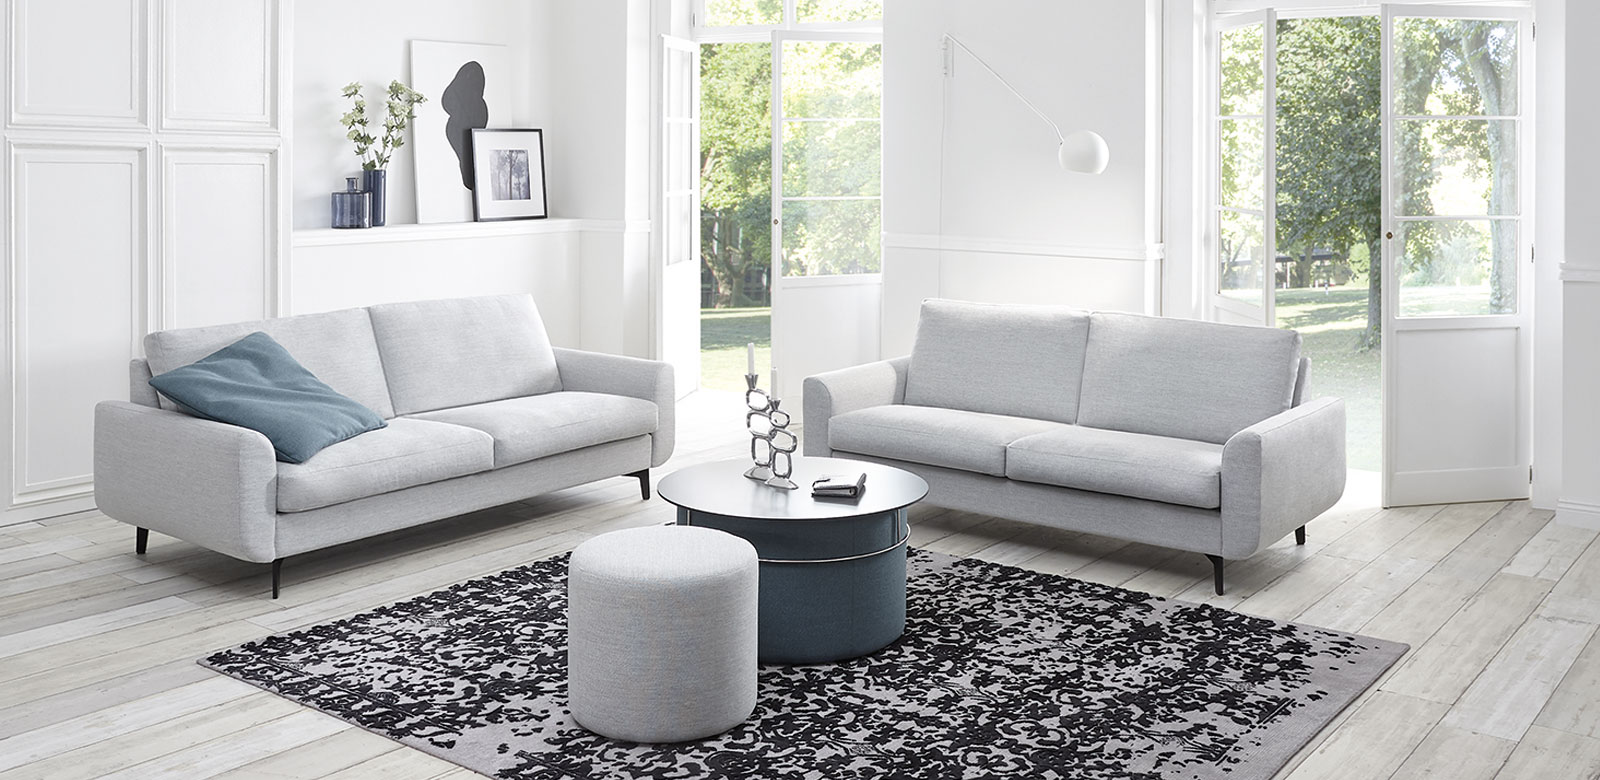 Zwei CL830 Sofas aus grau-weißem Stoff mit runden Tisch-Hockern und blauen Kissen im weißem Wohnzimmer eines Landhauses